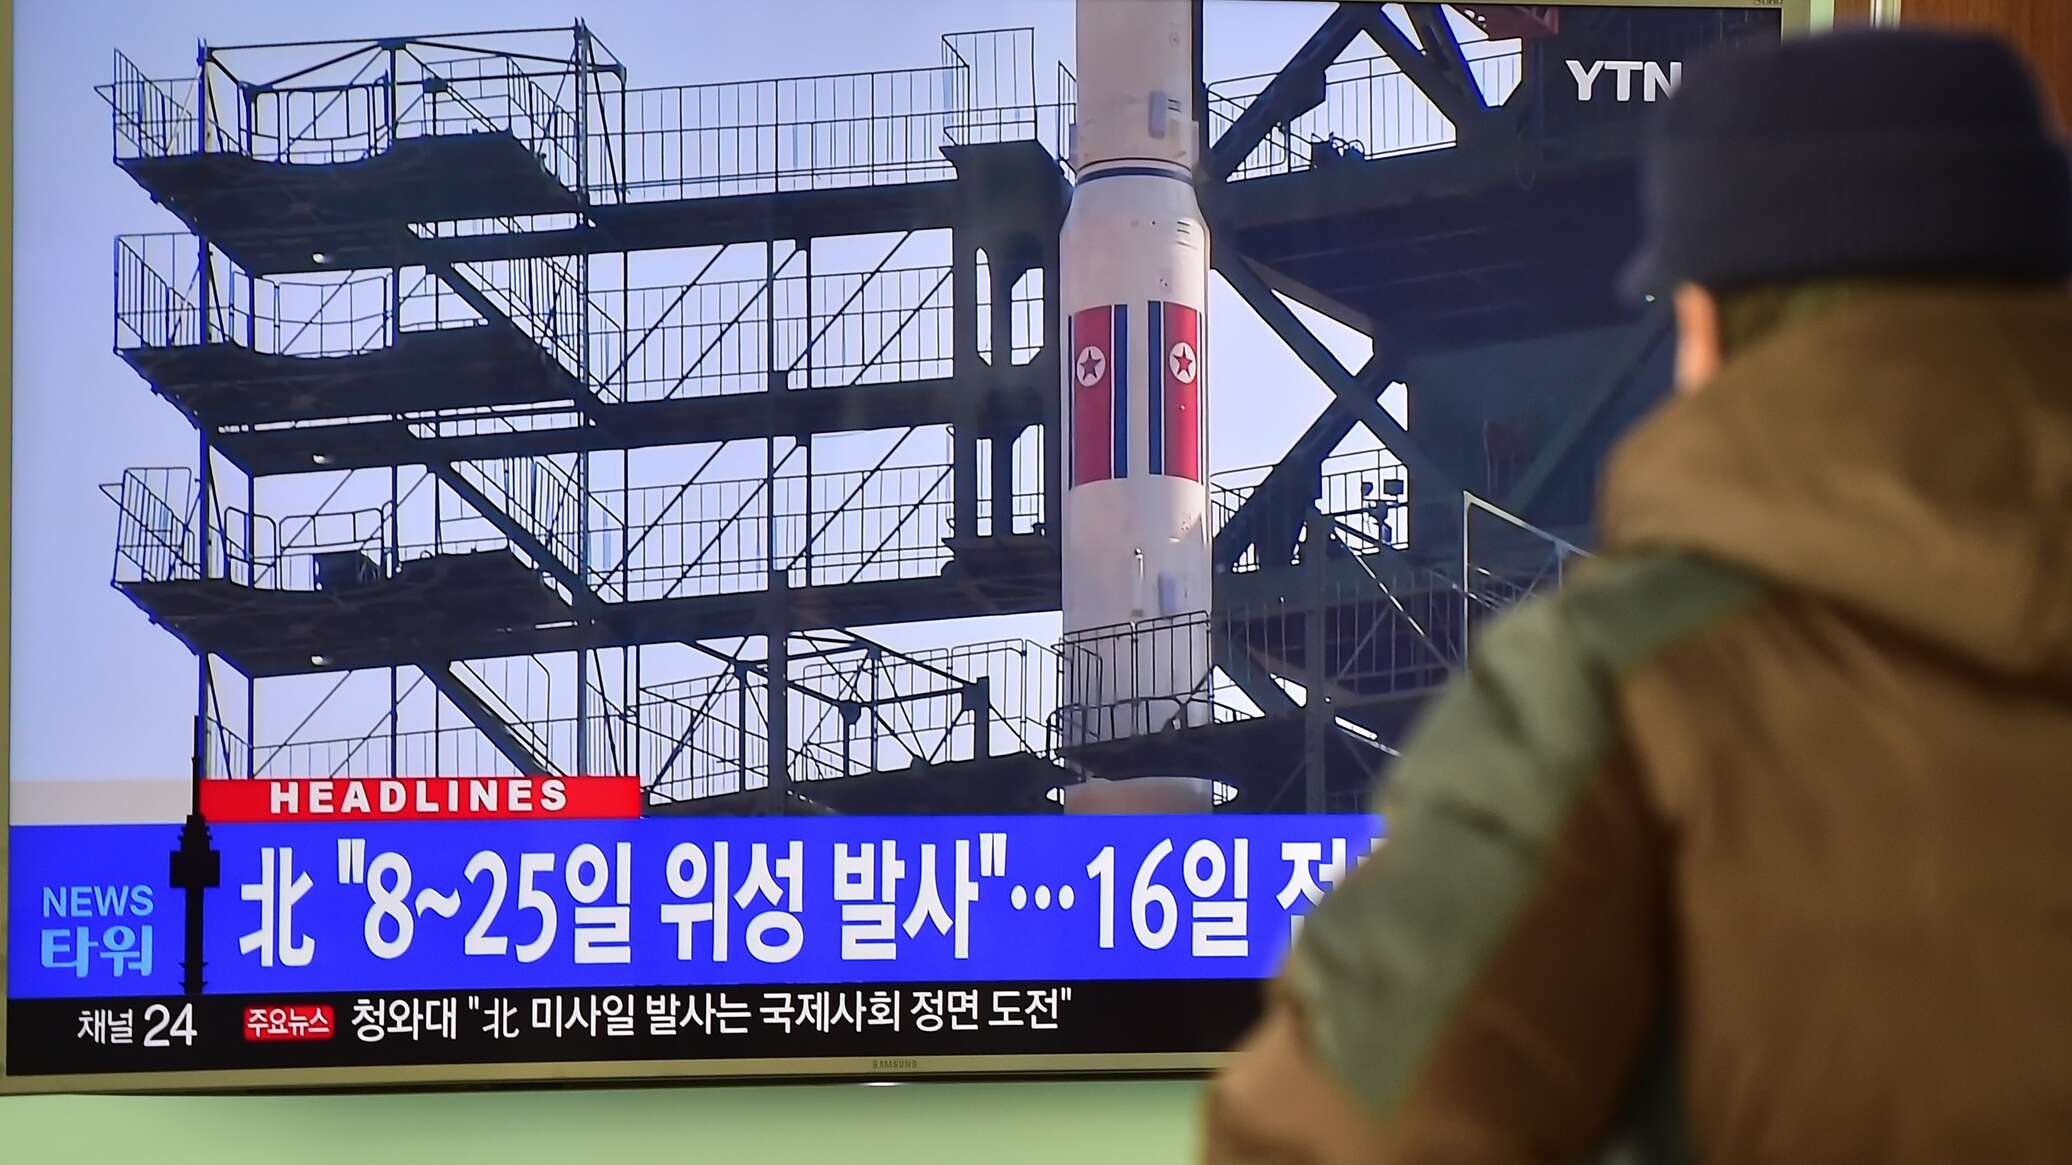 مجموعة السبع تدين "بأشد العبارات" إطلاق كوريا الشمالية لصاروخ باليستي عابر للقارات